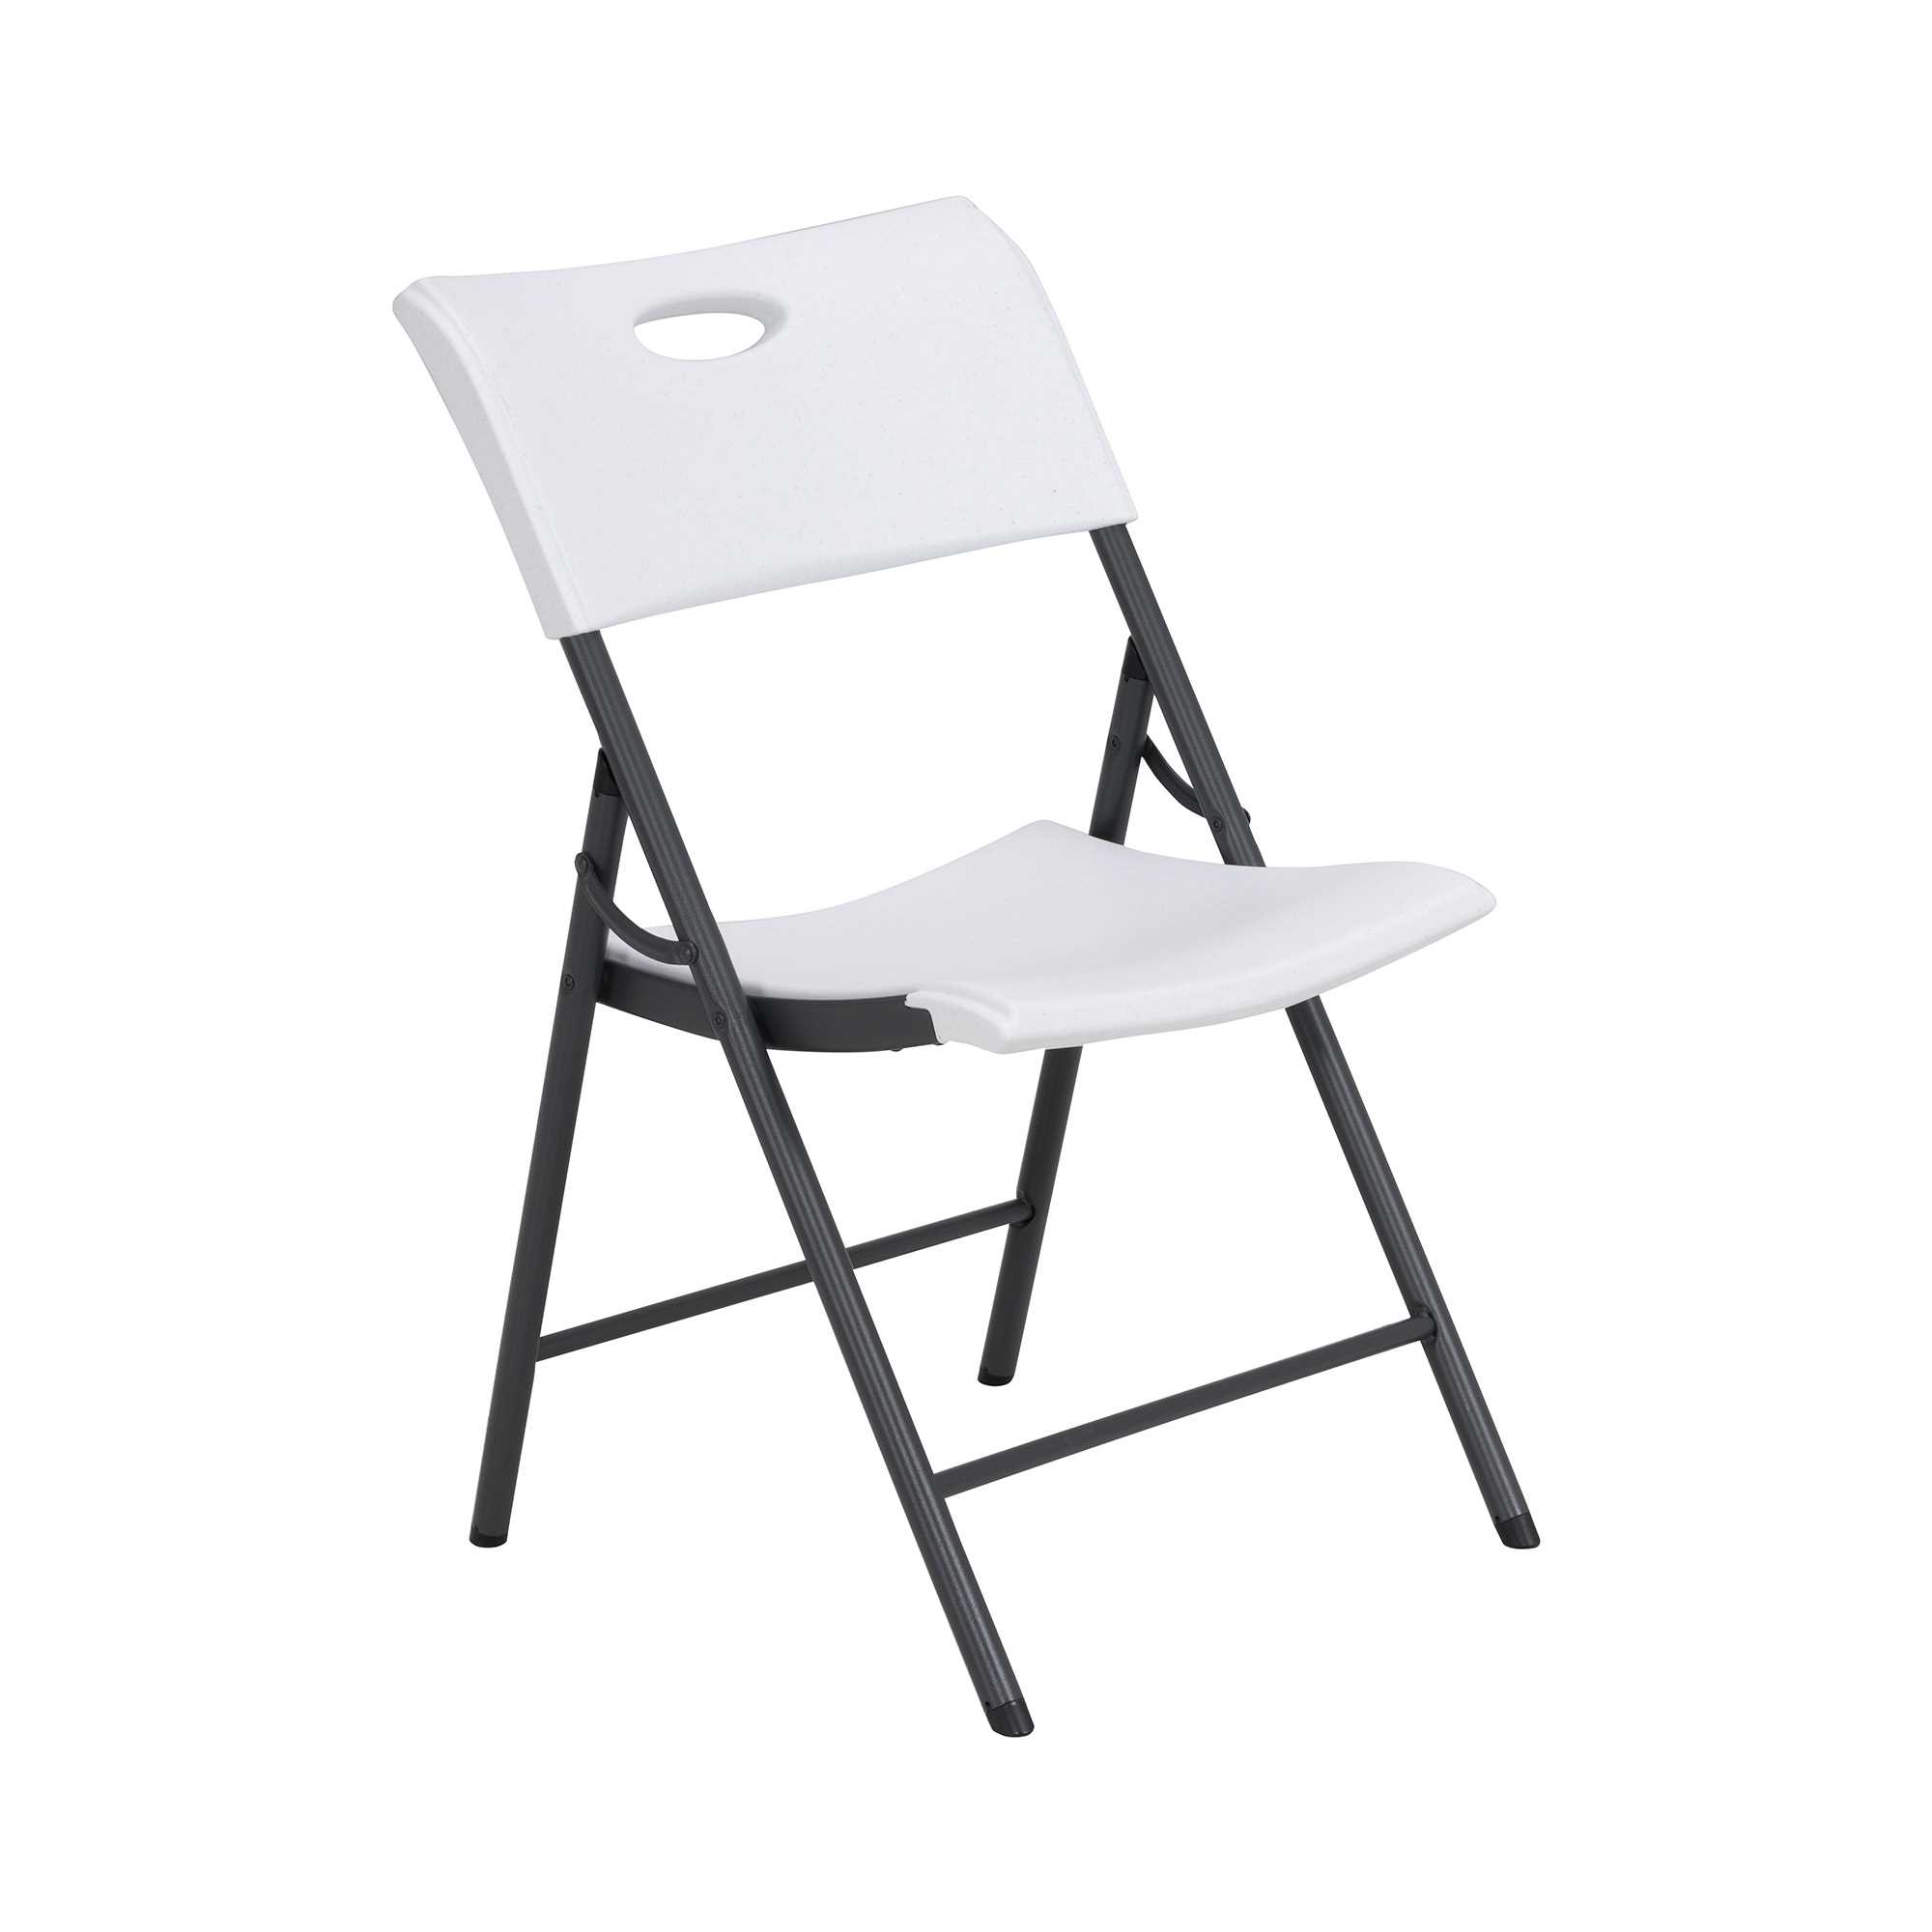 Light commercial folding chair (white)  